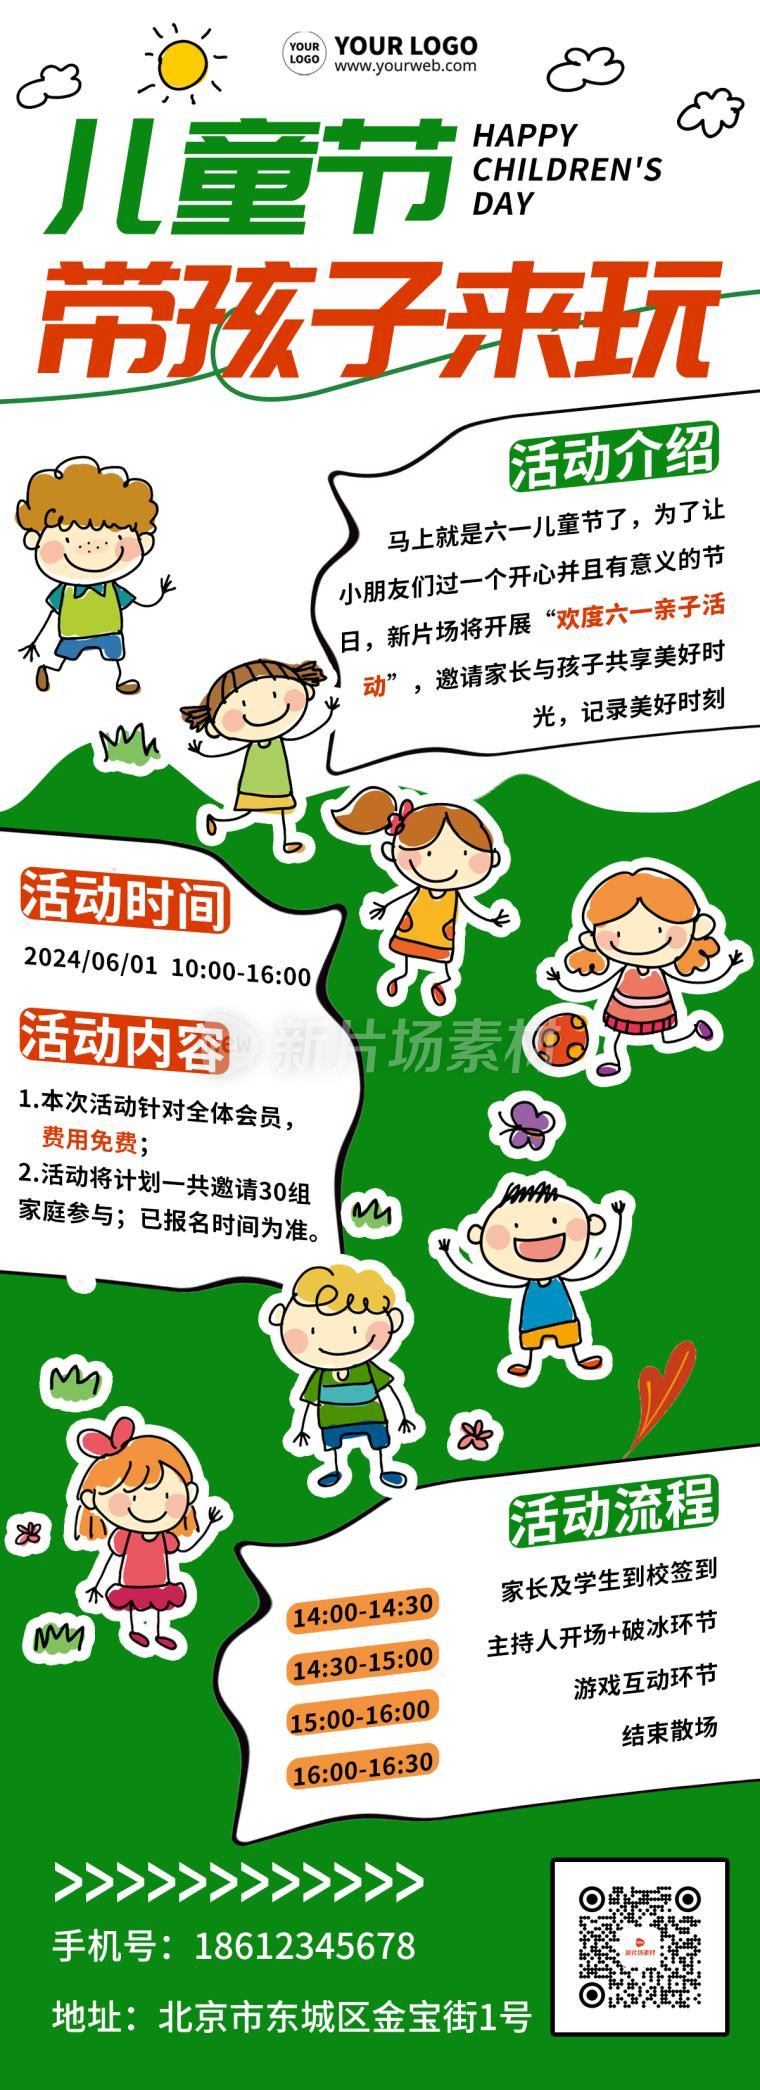 儿童节幼儿园活动宣传简约卡通详情长图